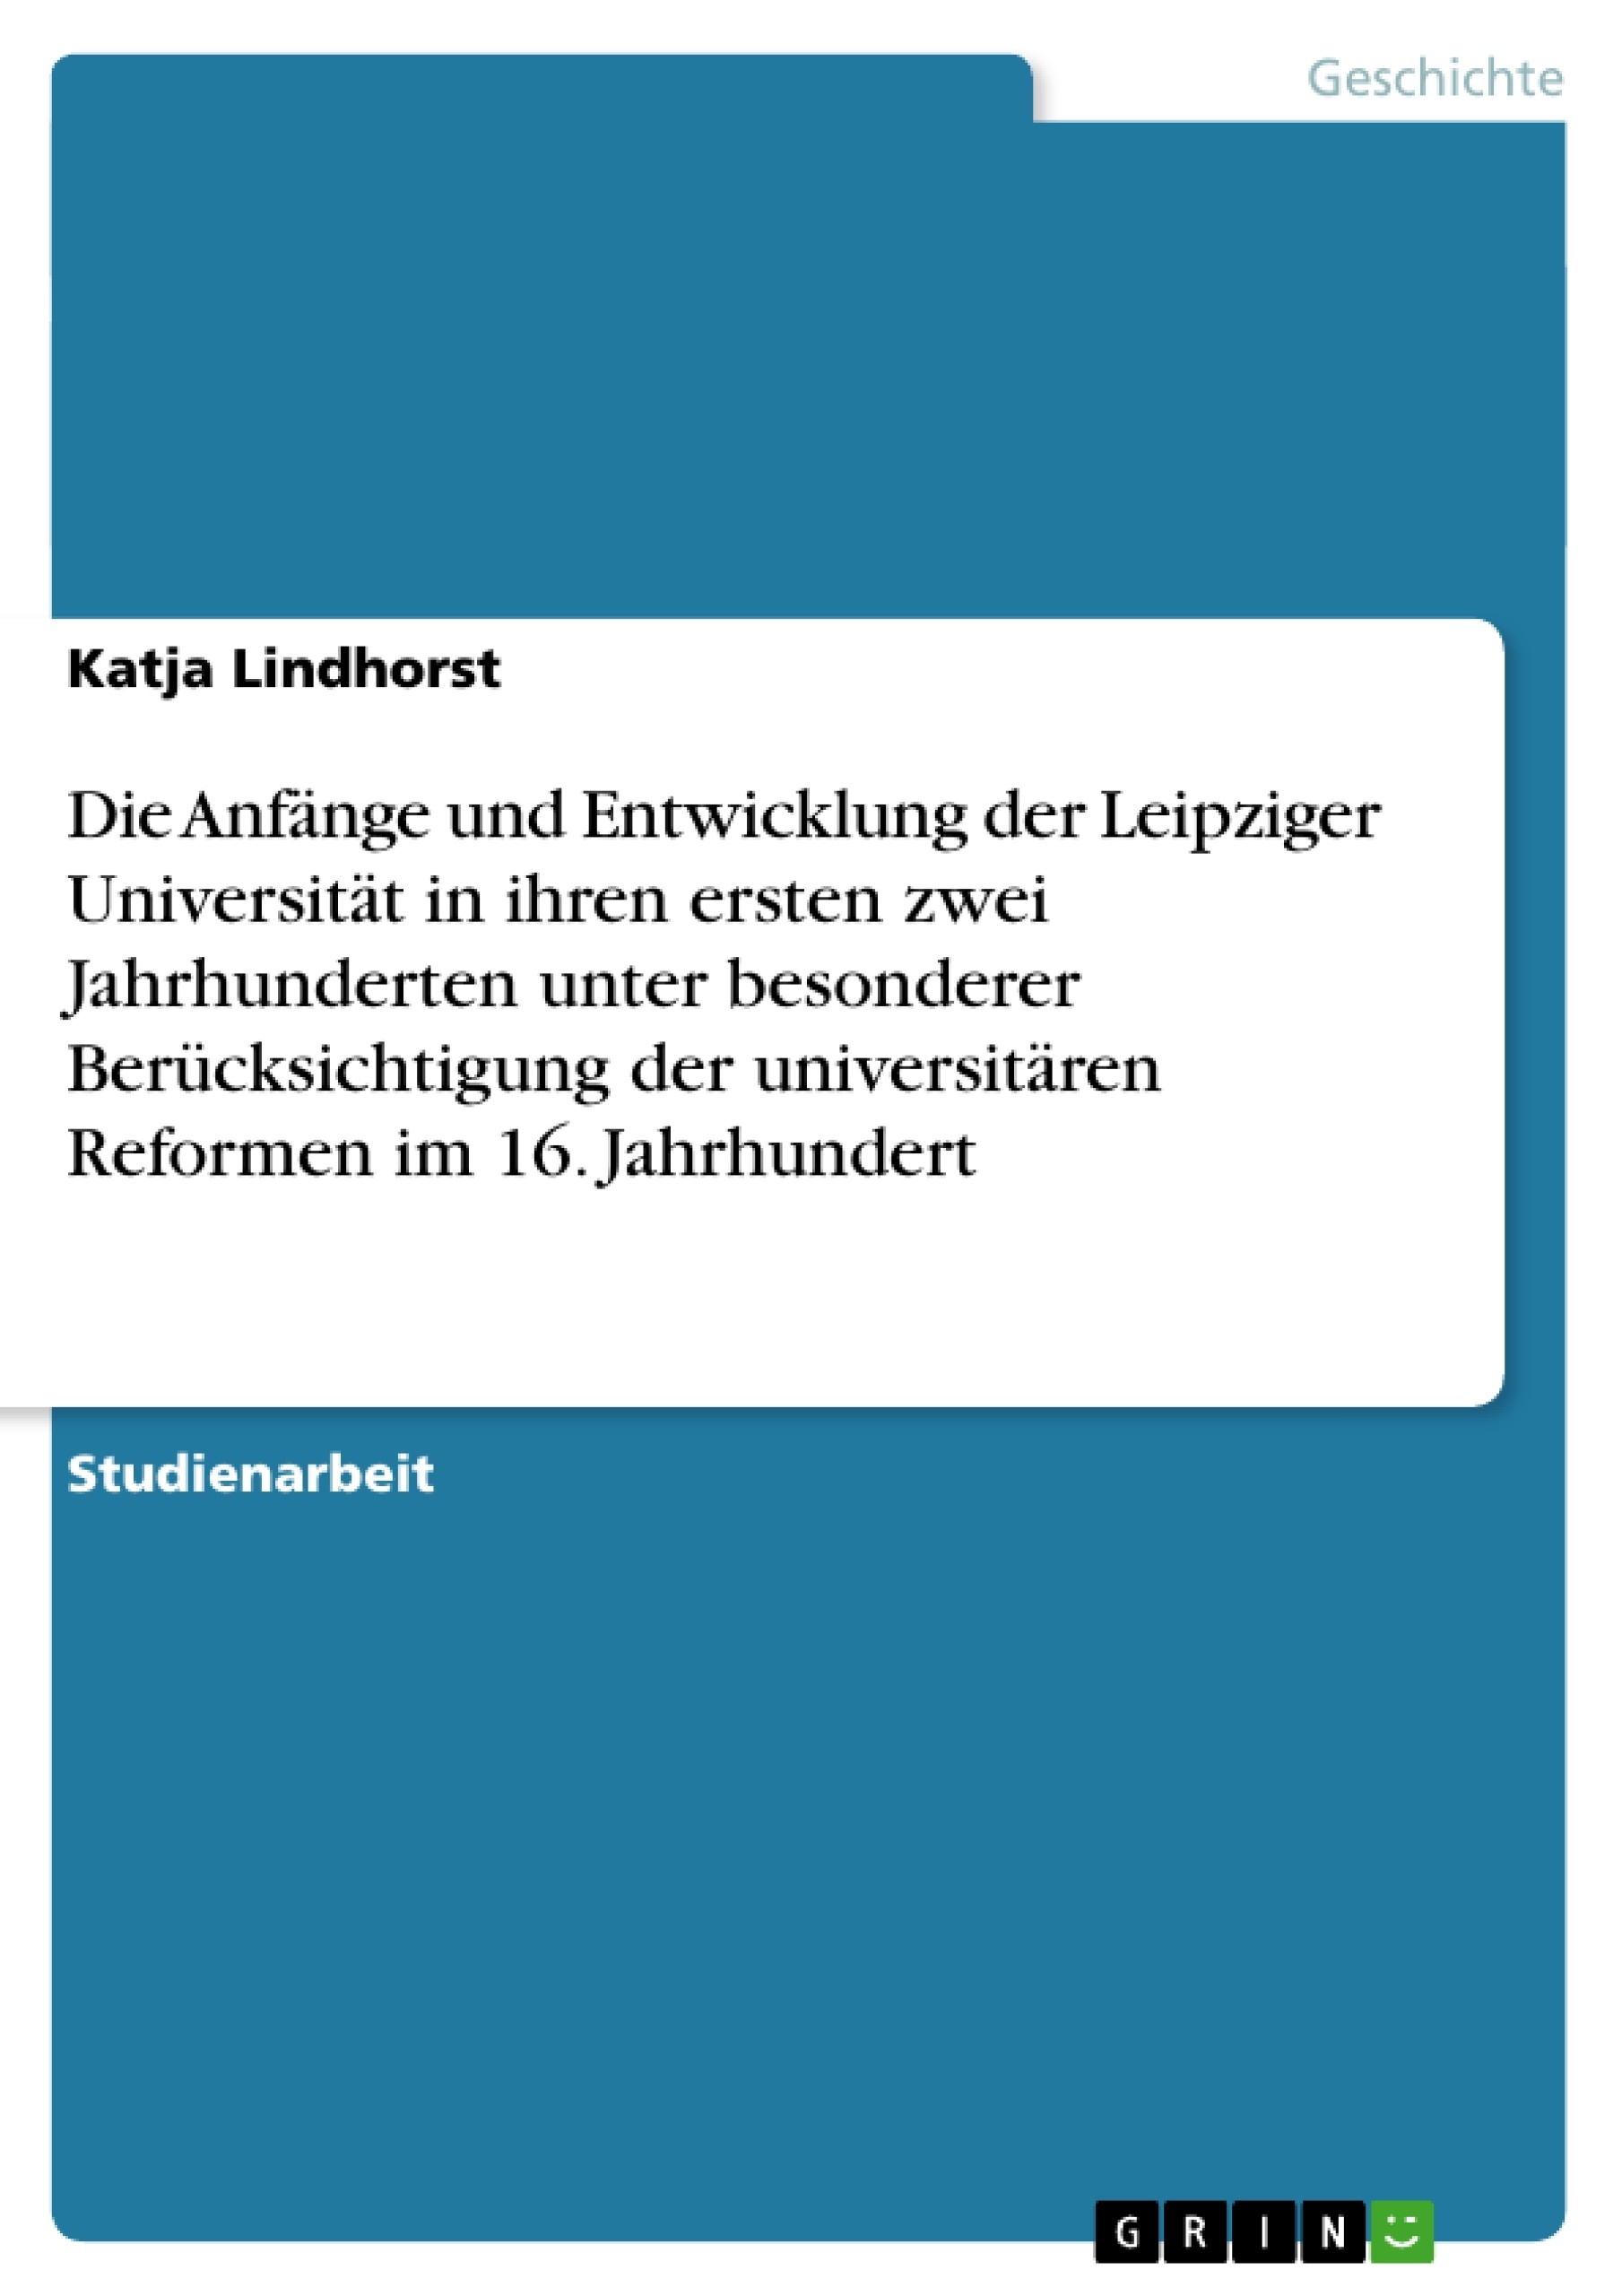 Título: Die Anfänge und Entwicklung der Leipziger Universität in ihren ersten zwei Jahrhunderten unter besonderer Berücksichtigung der universitären Reformen im 16. Jahrhundert